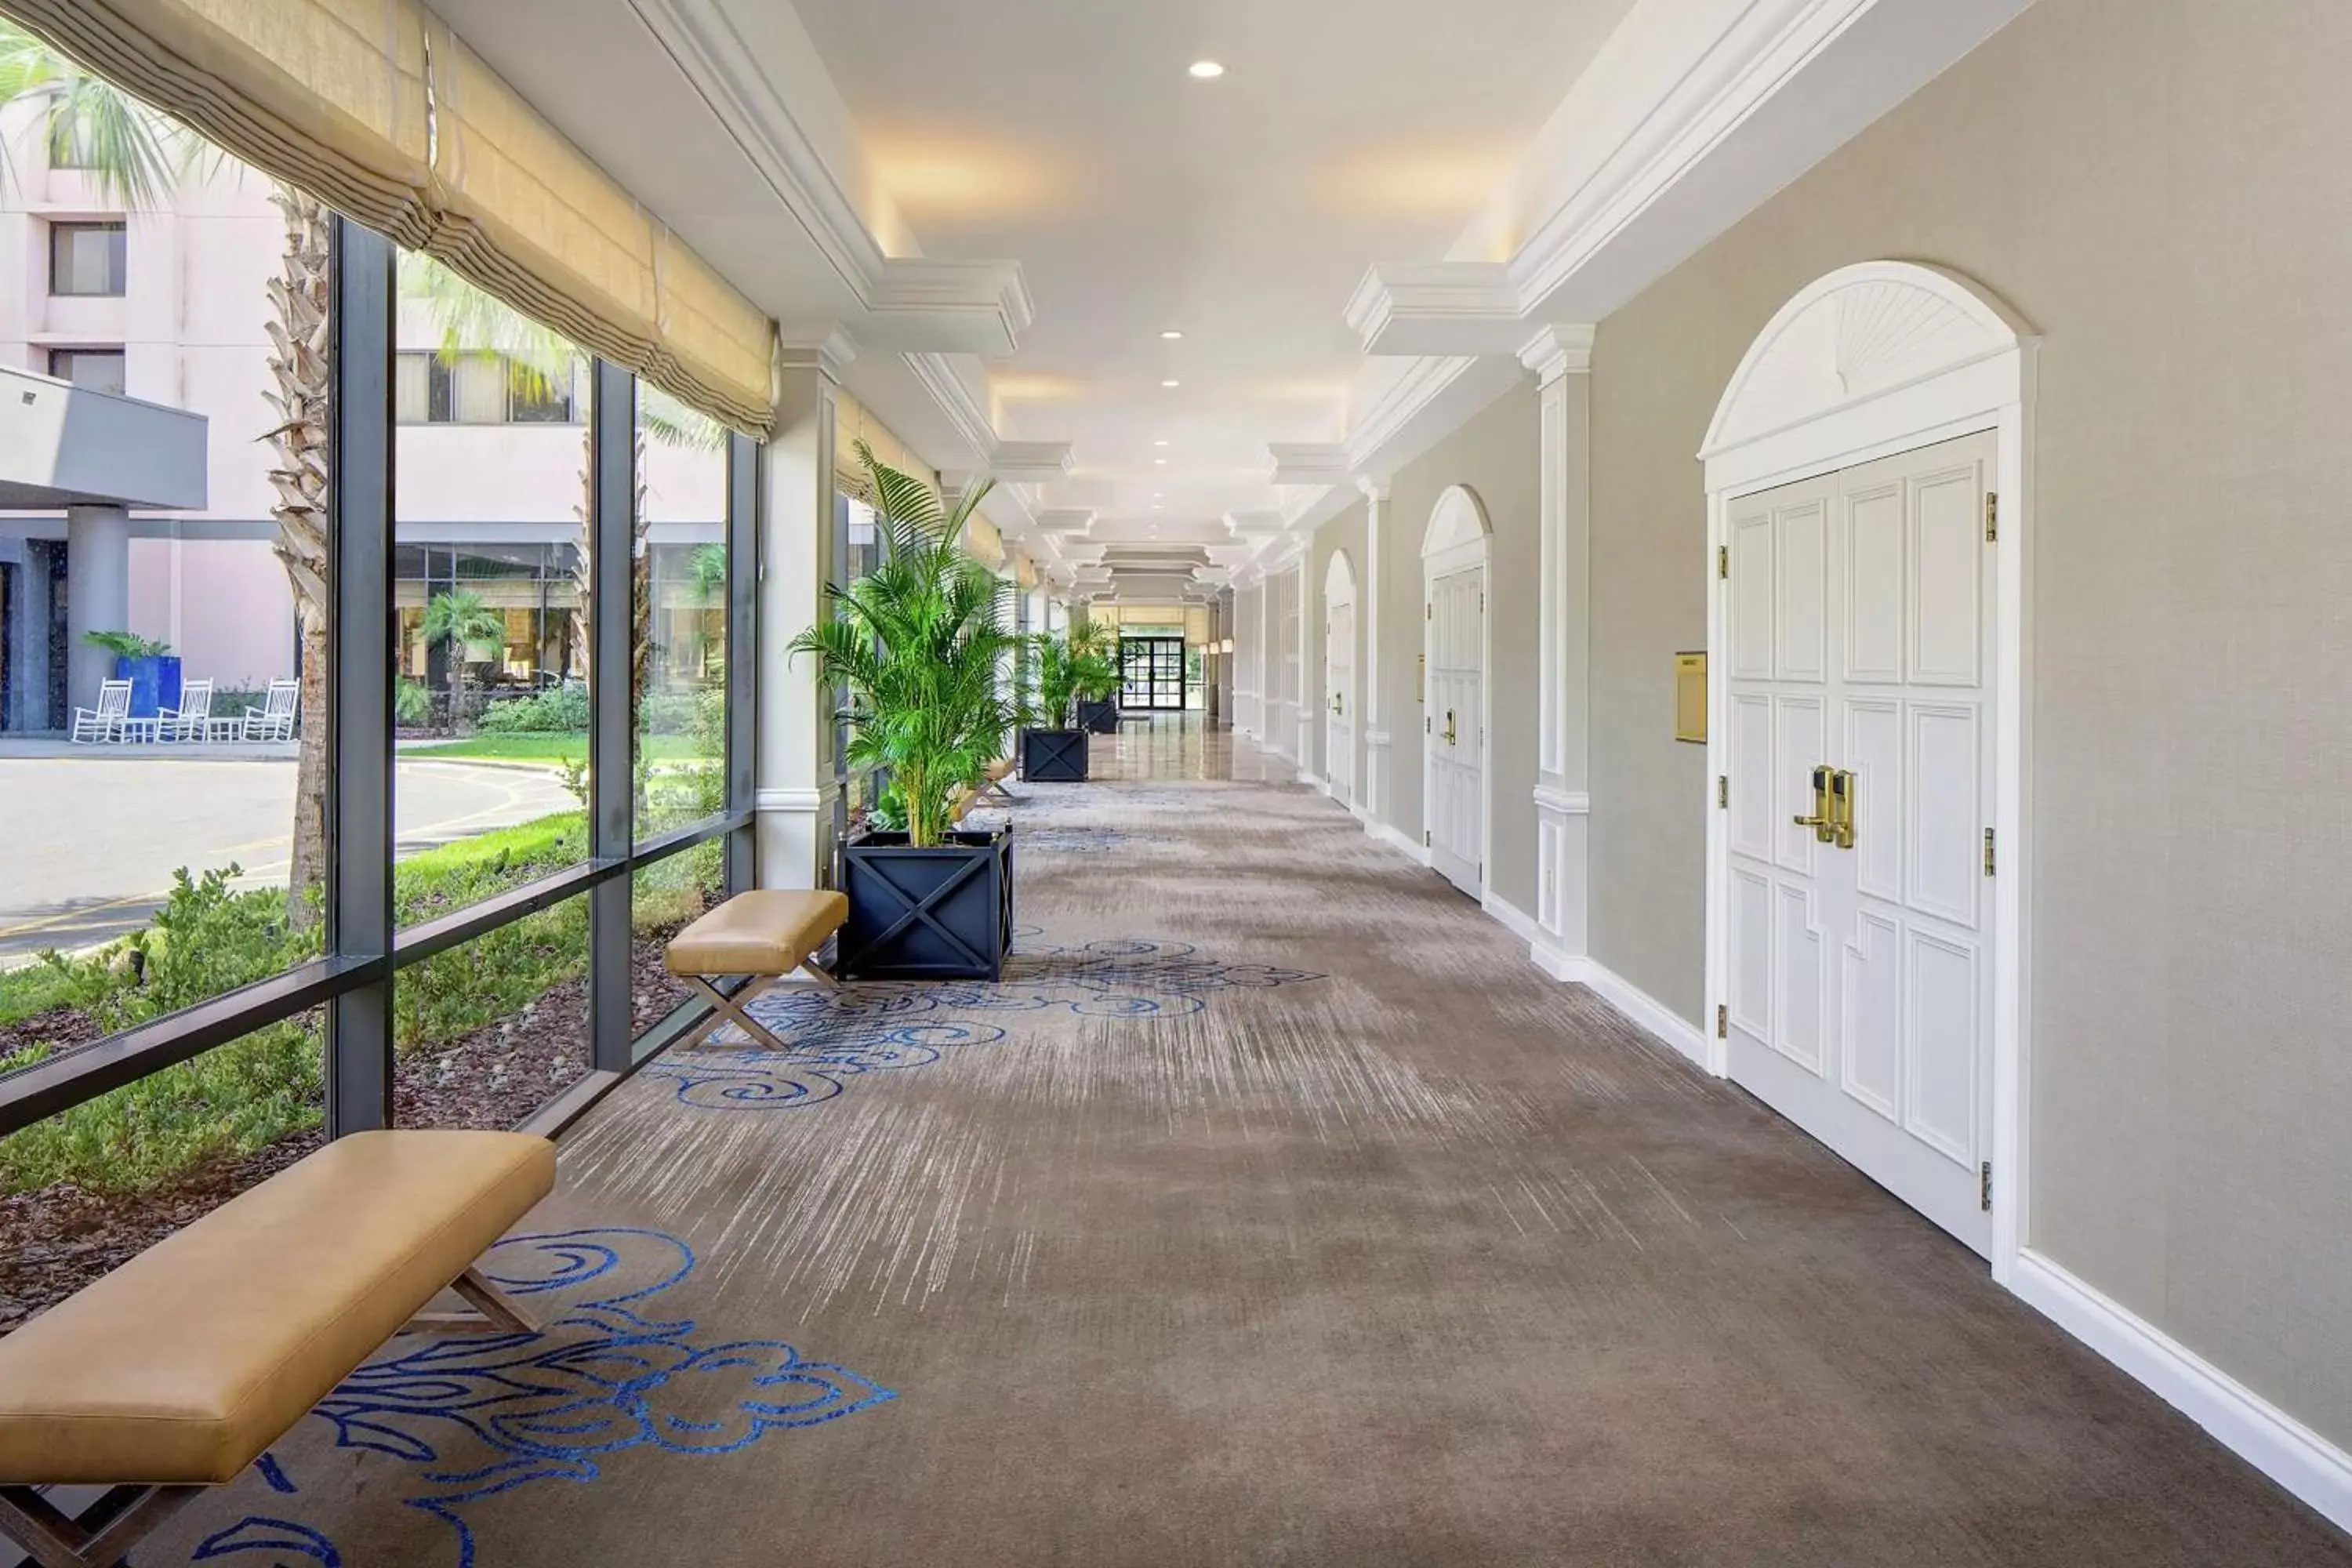 Lobby or reception in Hilton Ocala